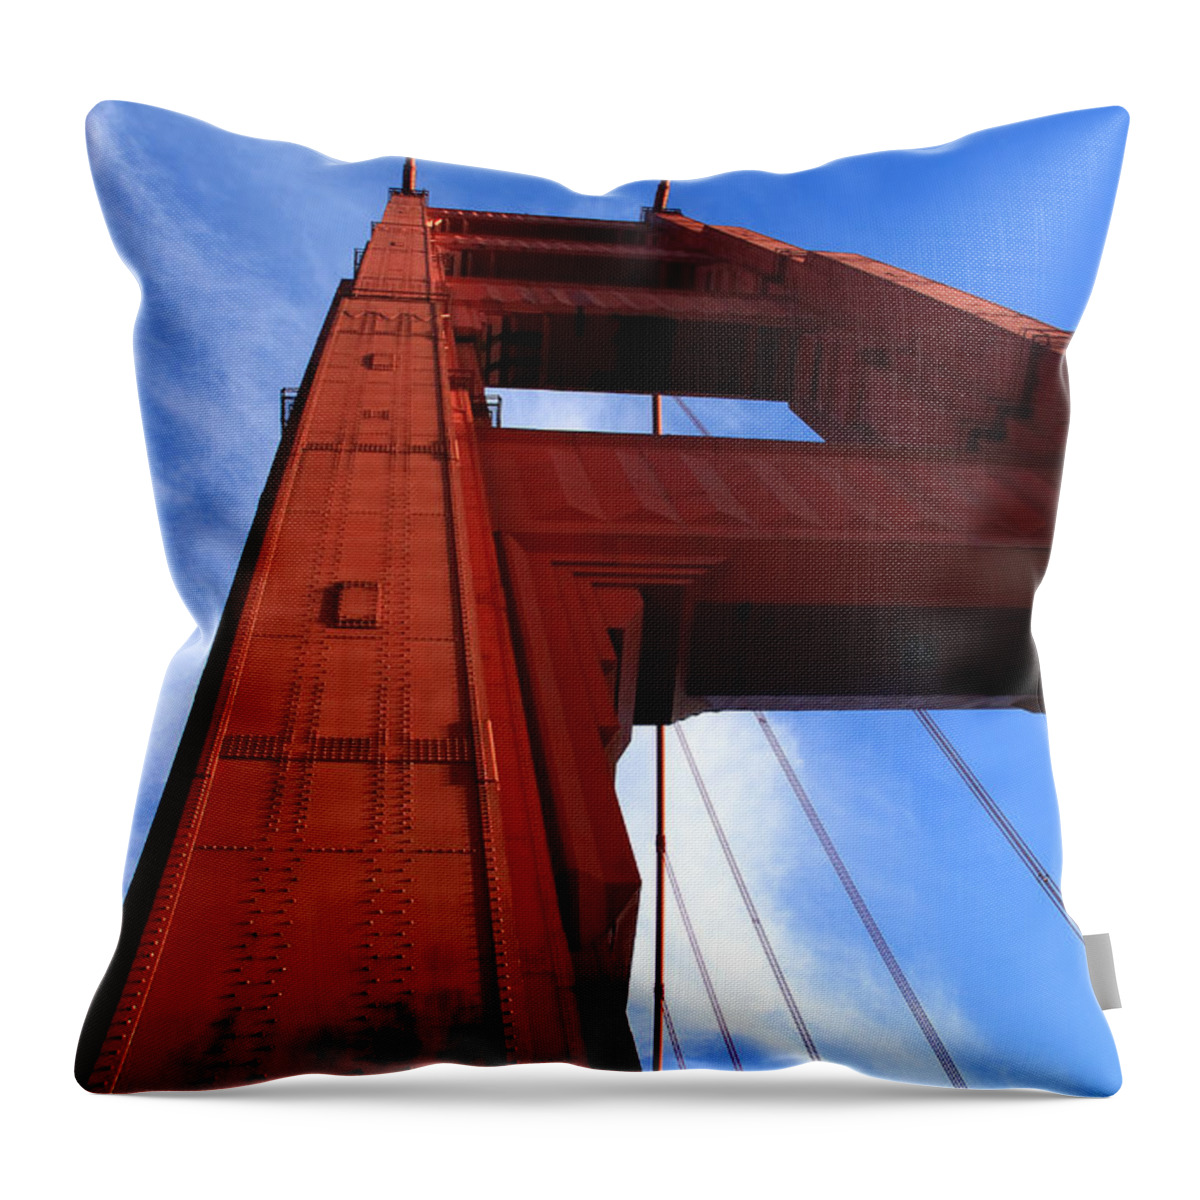 Golden Gate Throw Pillow featuring the photograph Golden Gate Tower by Aidan Moran